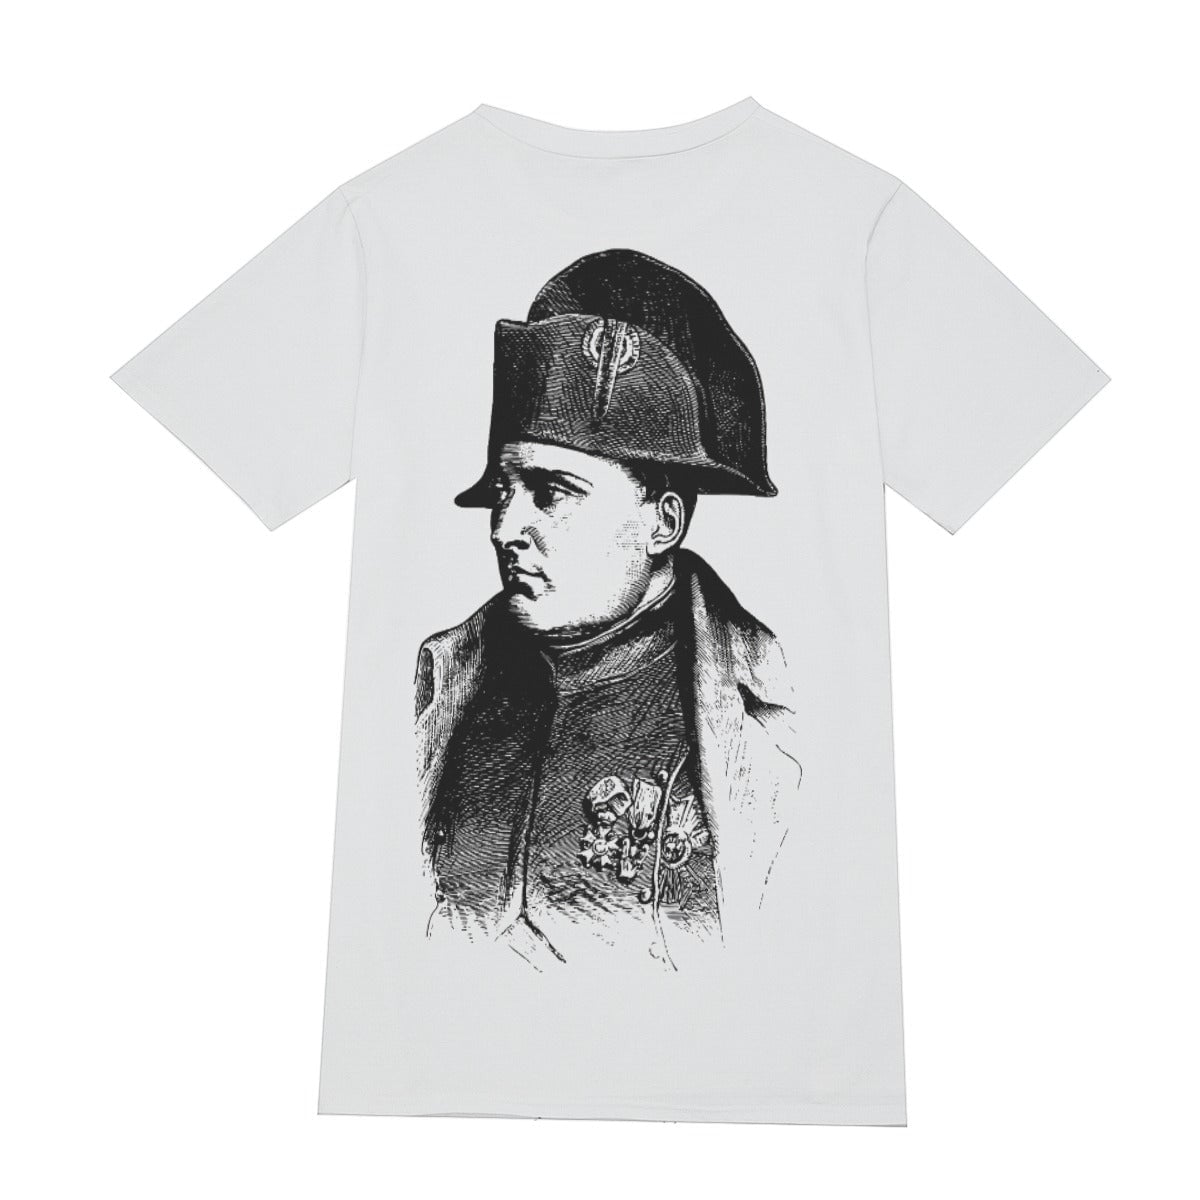 Napoleon Bonaparte Drawing Famous Portrait T-Shirt